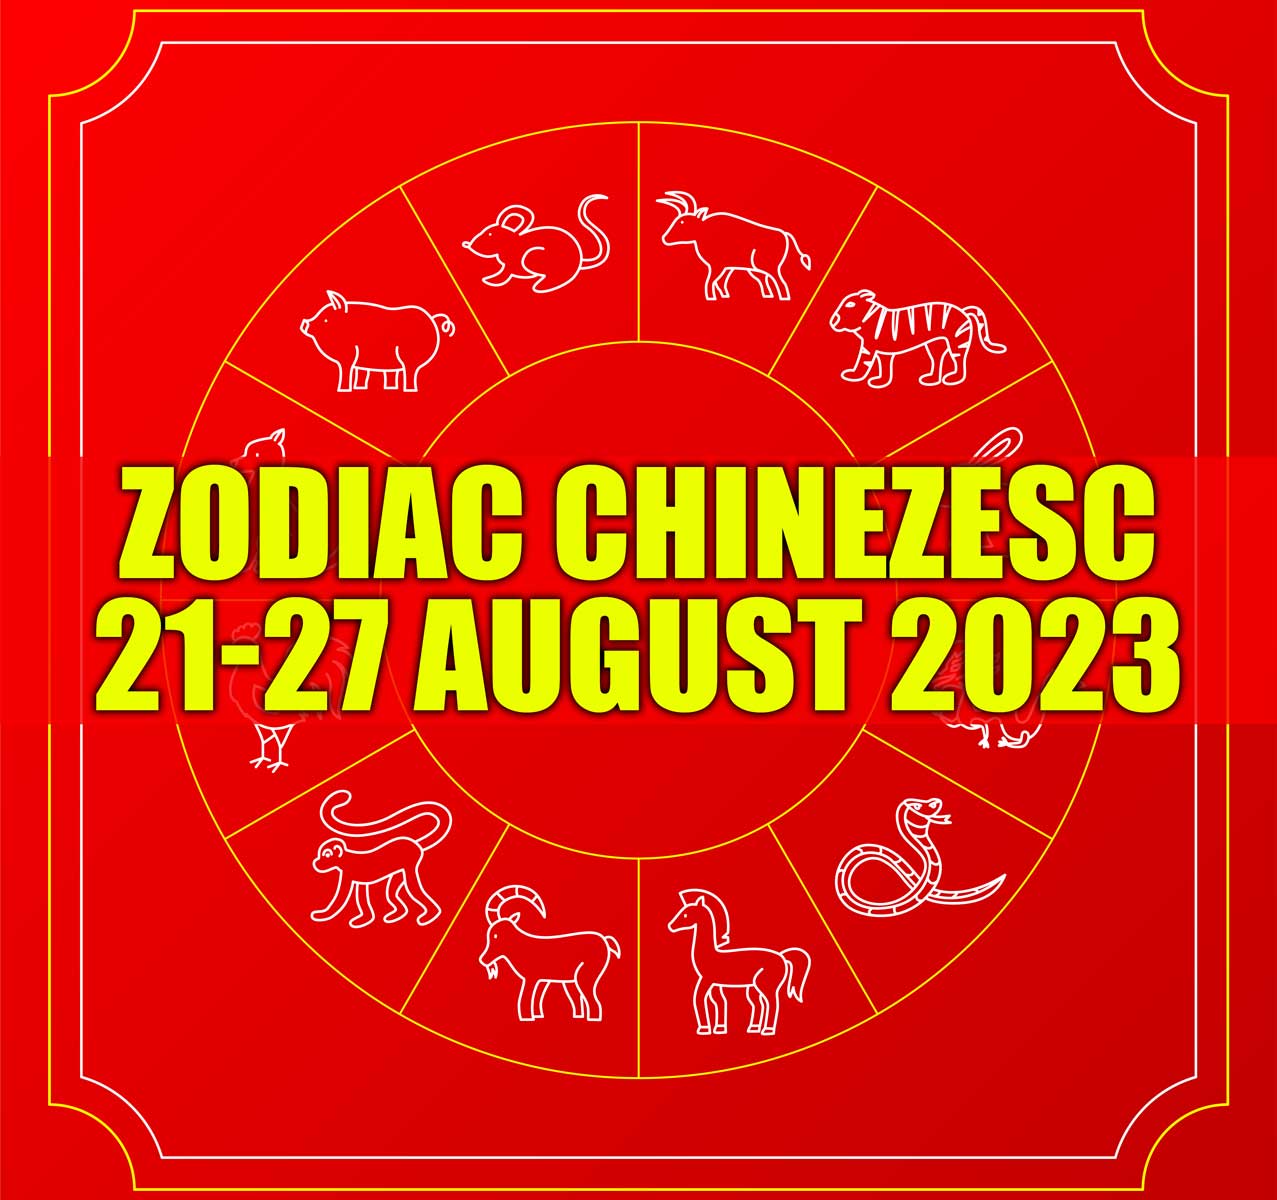 Zodiac Chinezesc 21-27 August 2023